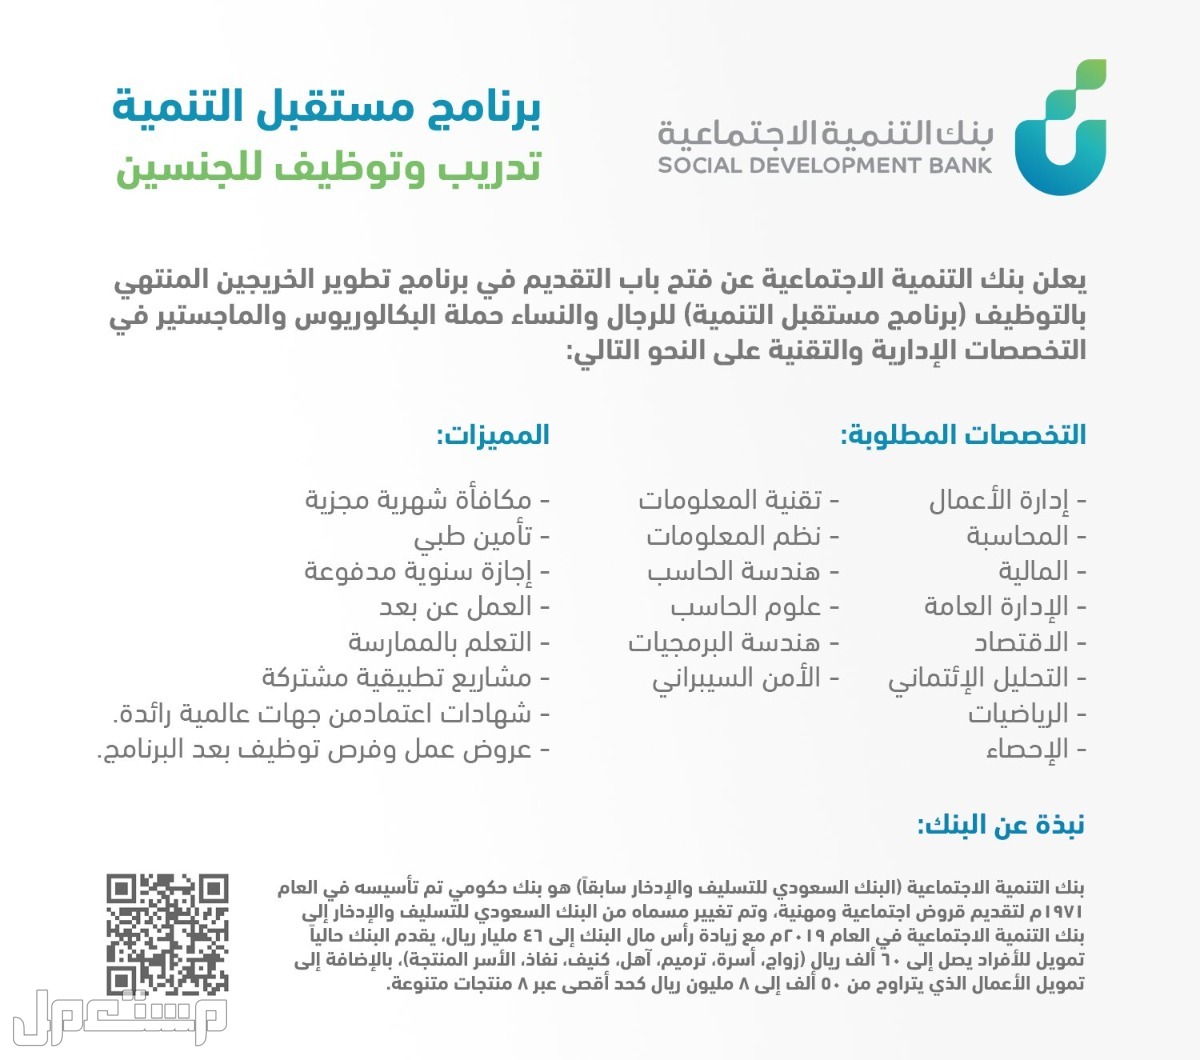 كيفية التقديم على برنامج مستقبل التنمية للخريجين في بنك التنمية الاجتماعية في البحرين